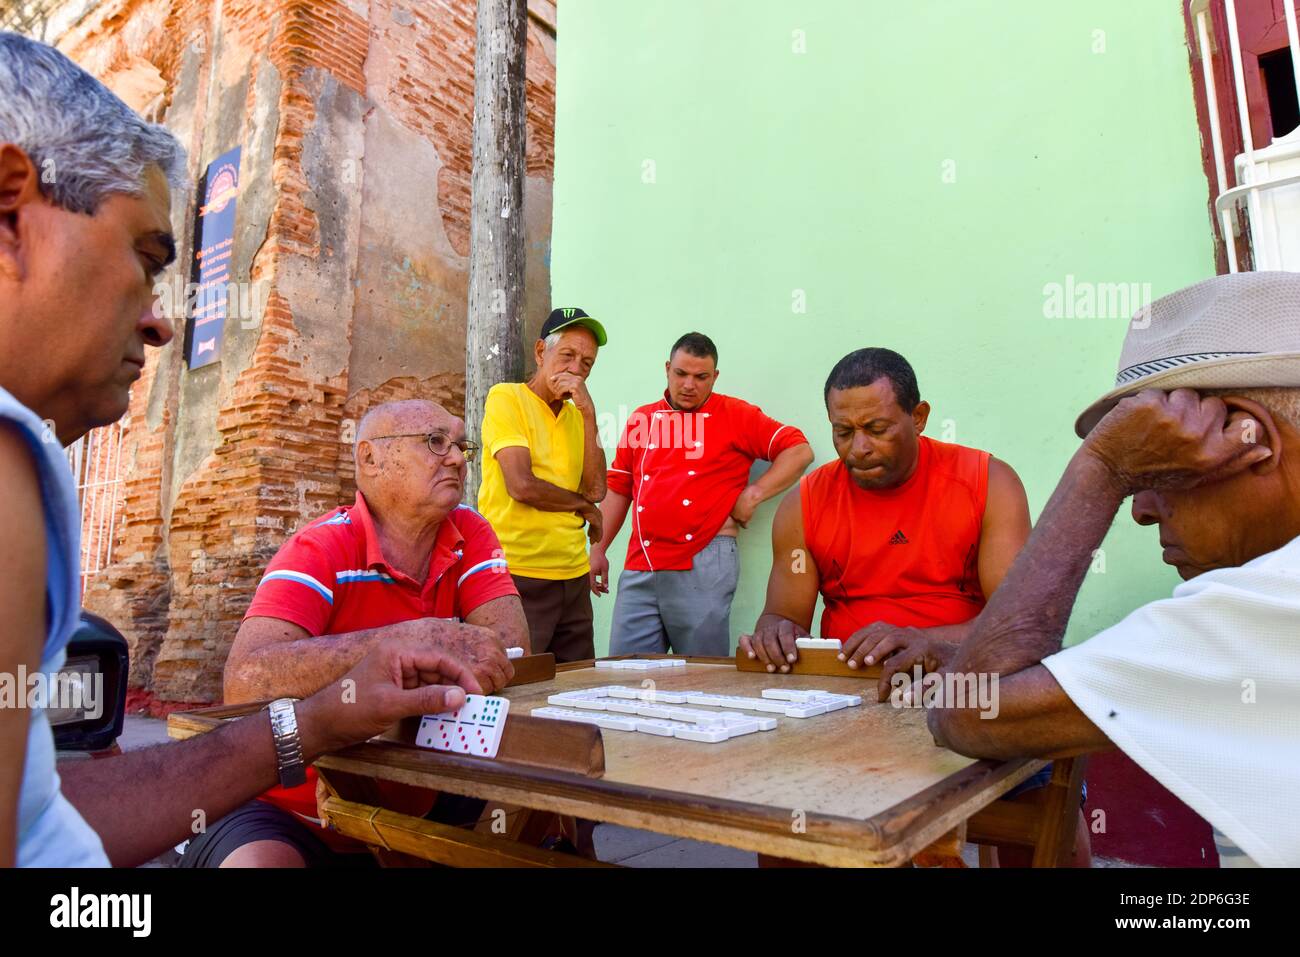 Hommes cubains jouant des dominos dans la rue, Trinidad Cuba Banque D'Images